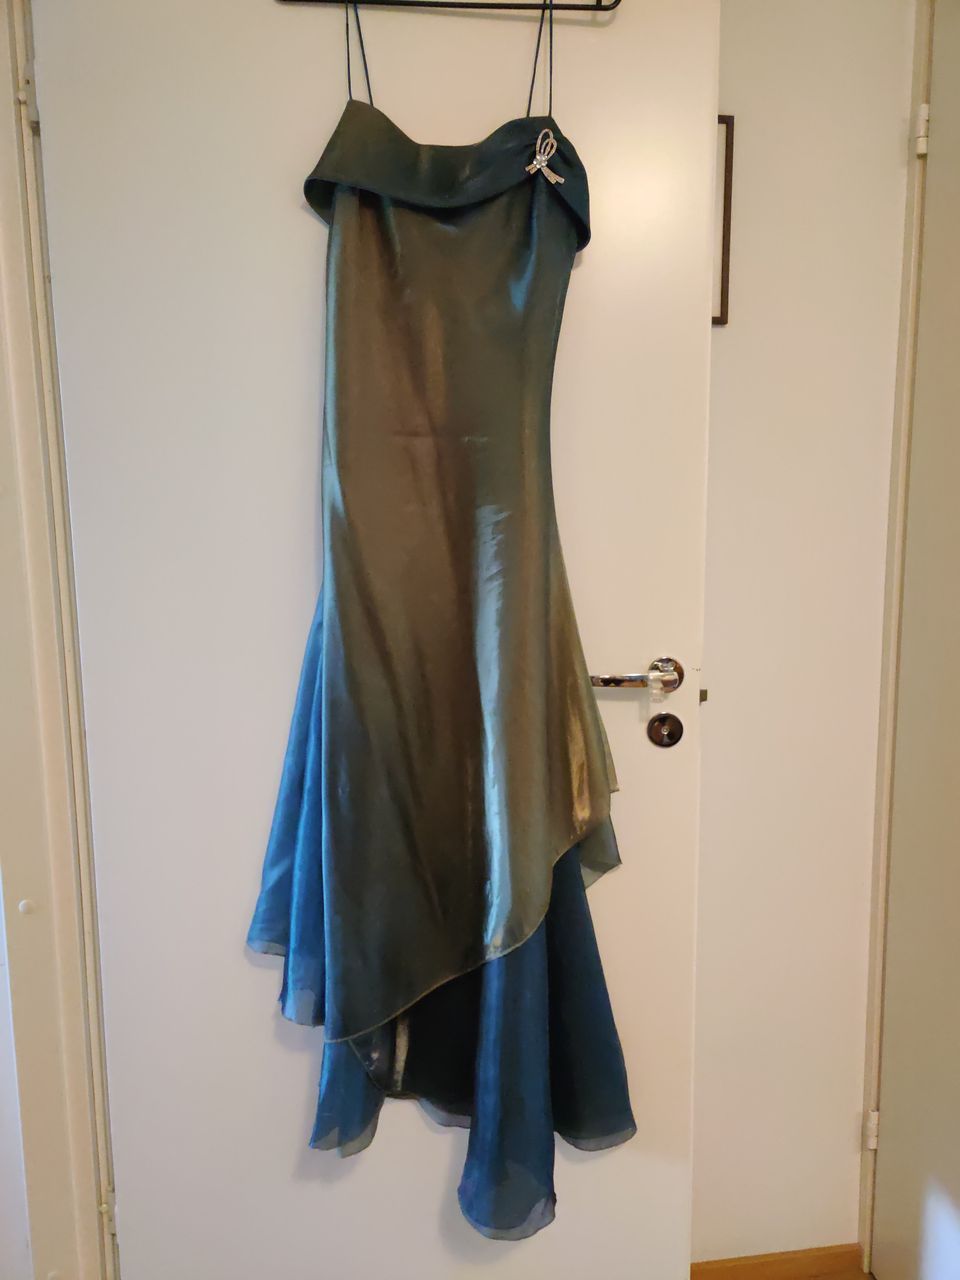 Hieno pitkä juhlava mekko, liukuvärjätty sinertävänvihreä